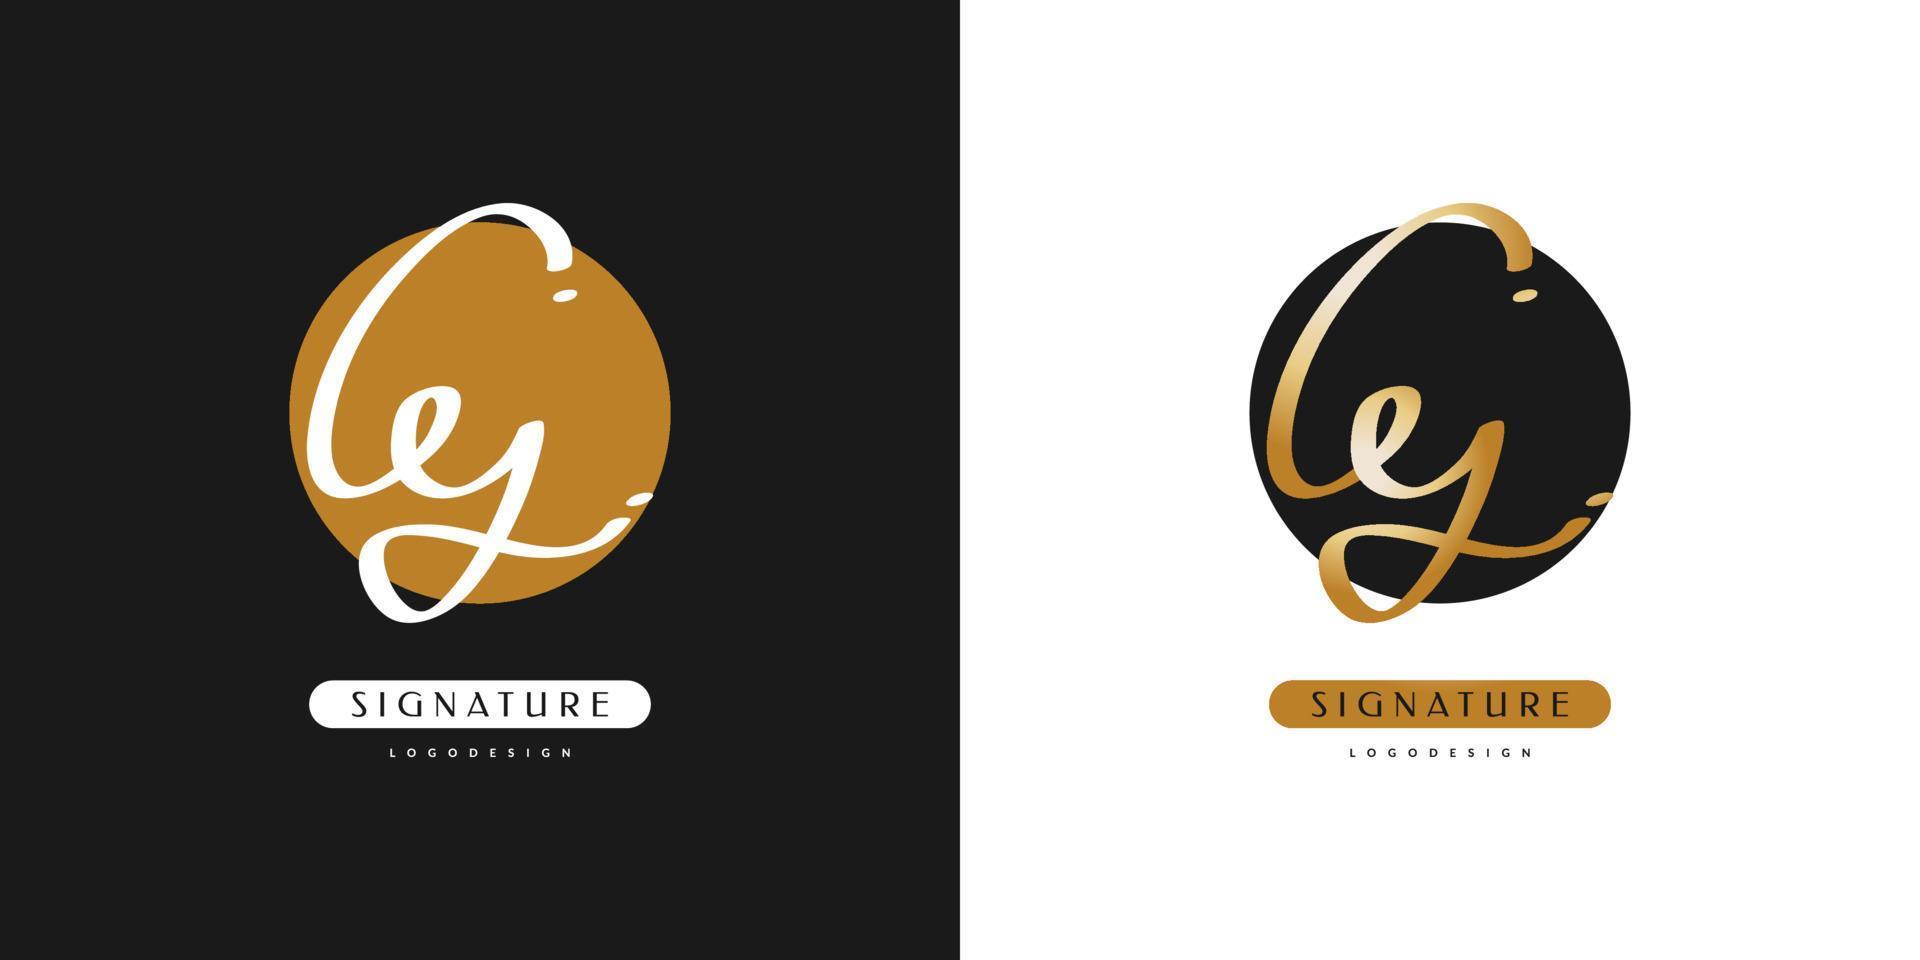 création de logo initiale cy avec style d'écriture manuscrite en dégradé d'or. logo ou symbole de signature cy pour le mariage, la mode, les bijoux, la boutique, l'identité botanique, florale et commerciale. logo féminin vecteur